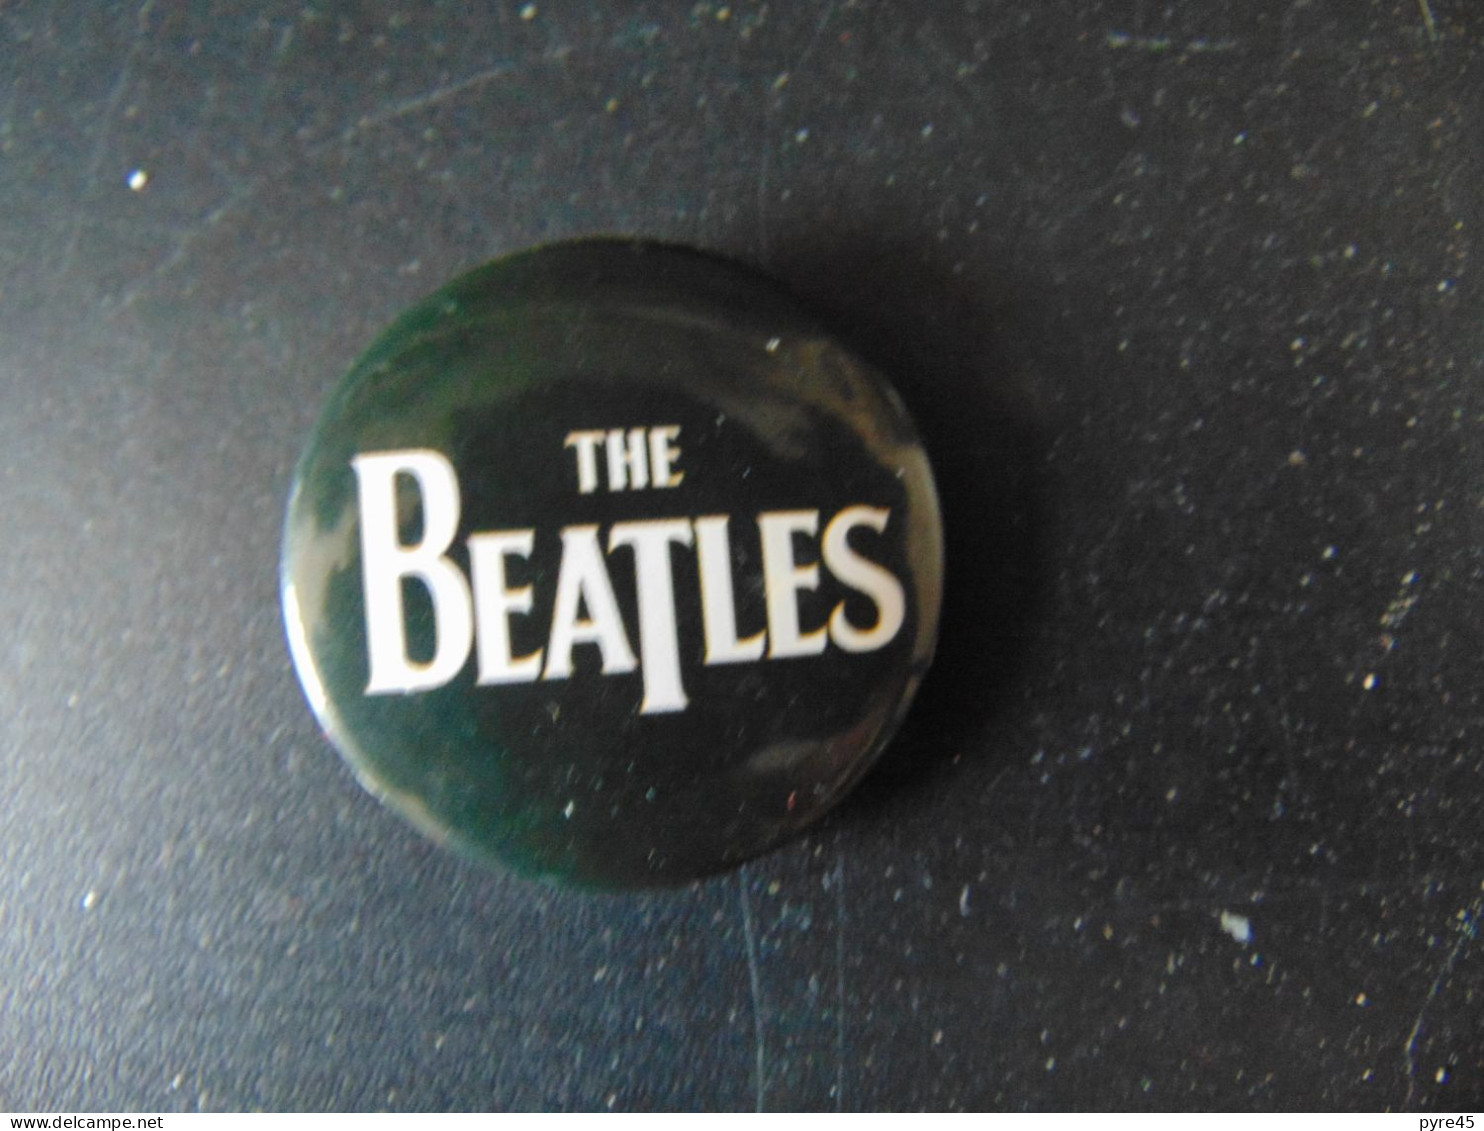 Badge " The Beatles " 2006 - Objets Dérivés